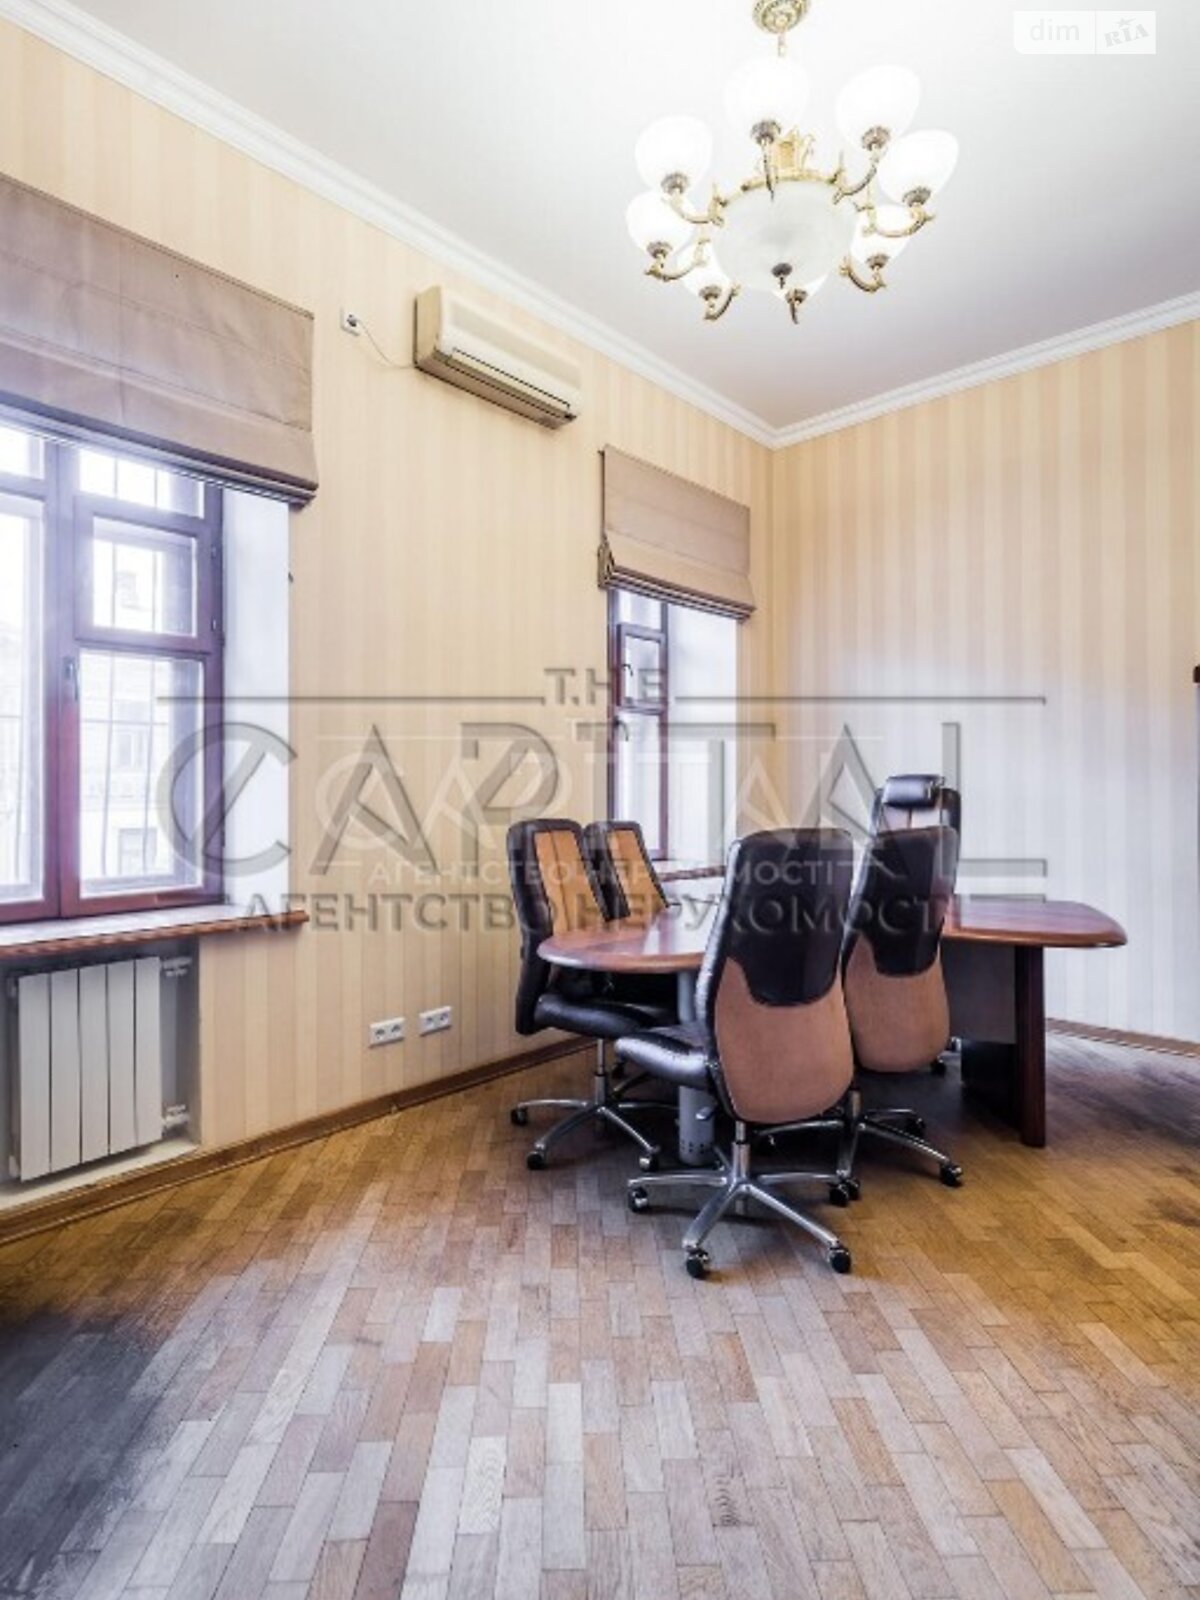 Аренда офисного помещения в Киеве, Вознесенский узвоз 18, помещений - 6, этаж - 1 фото 1